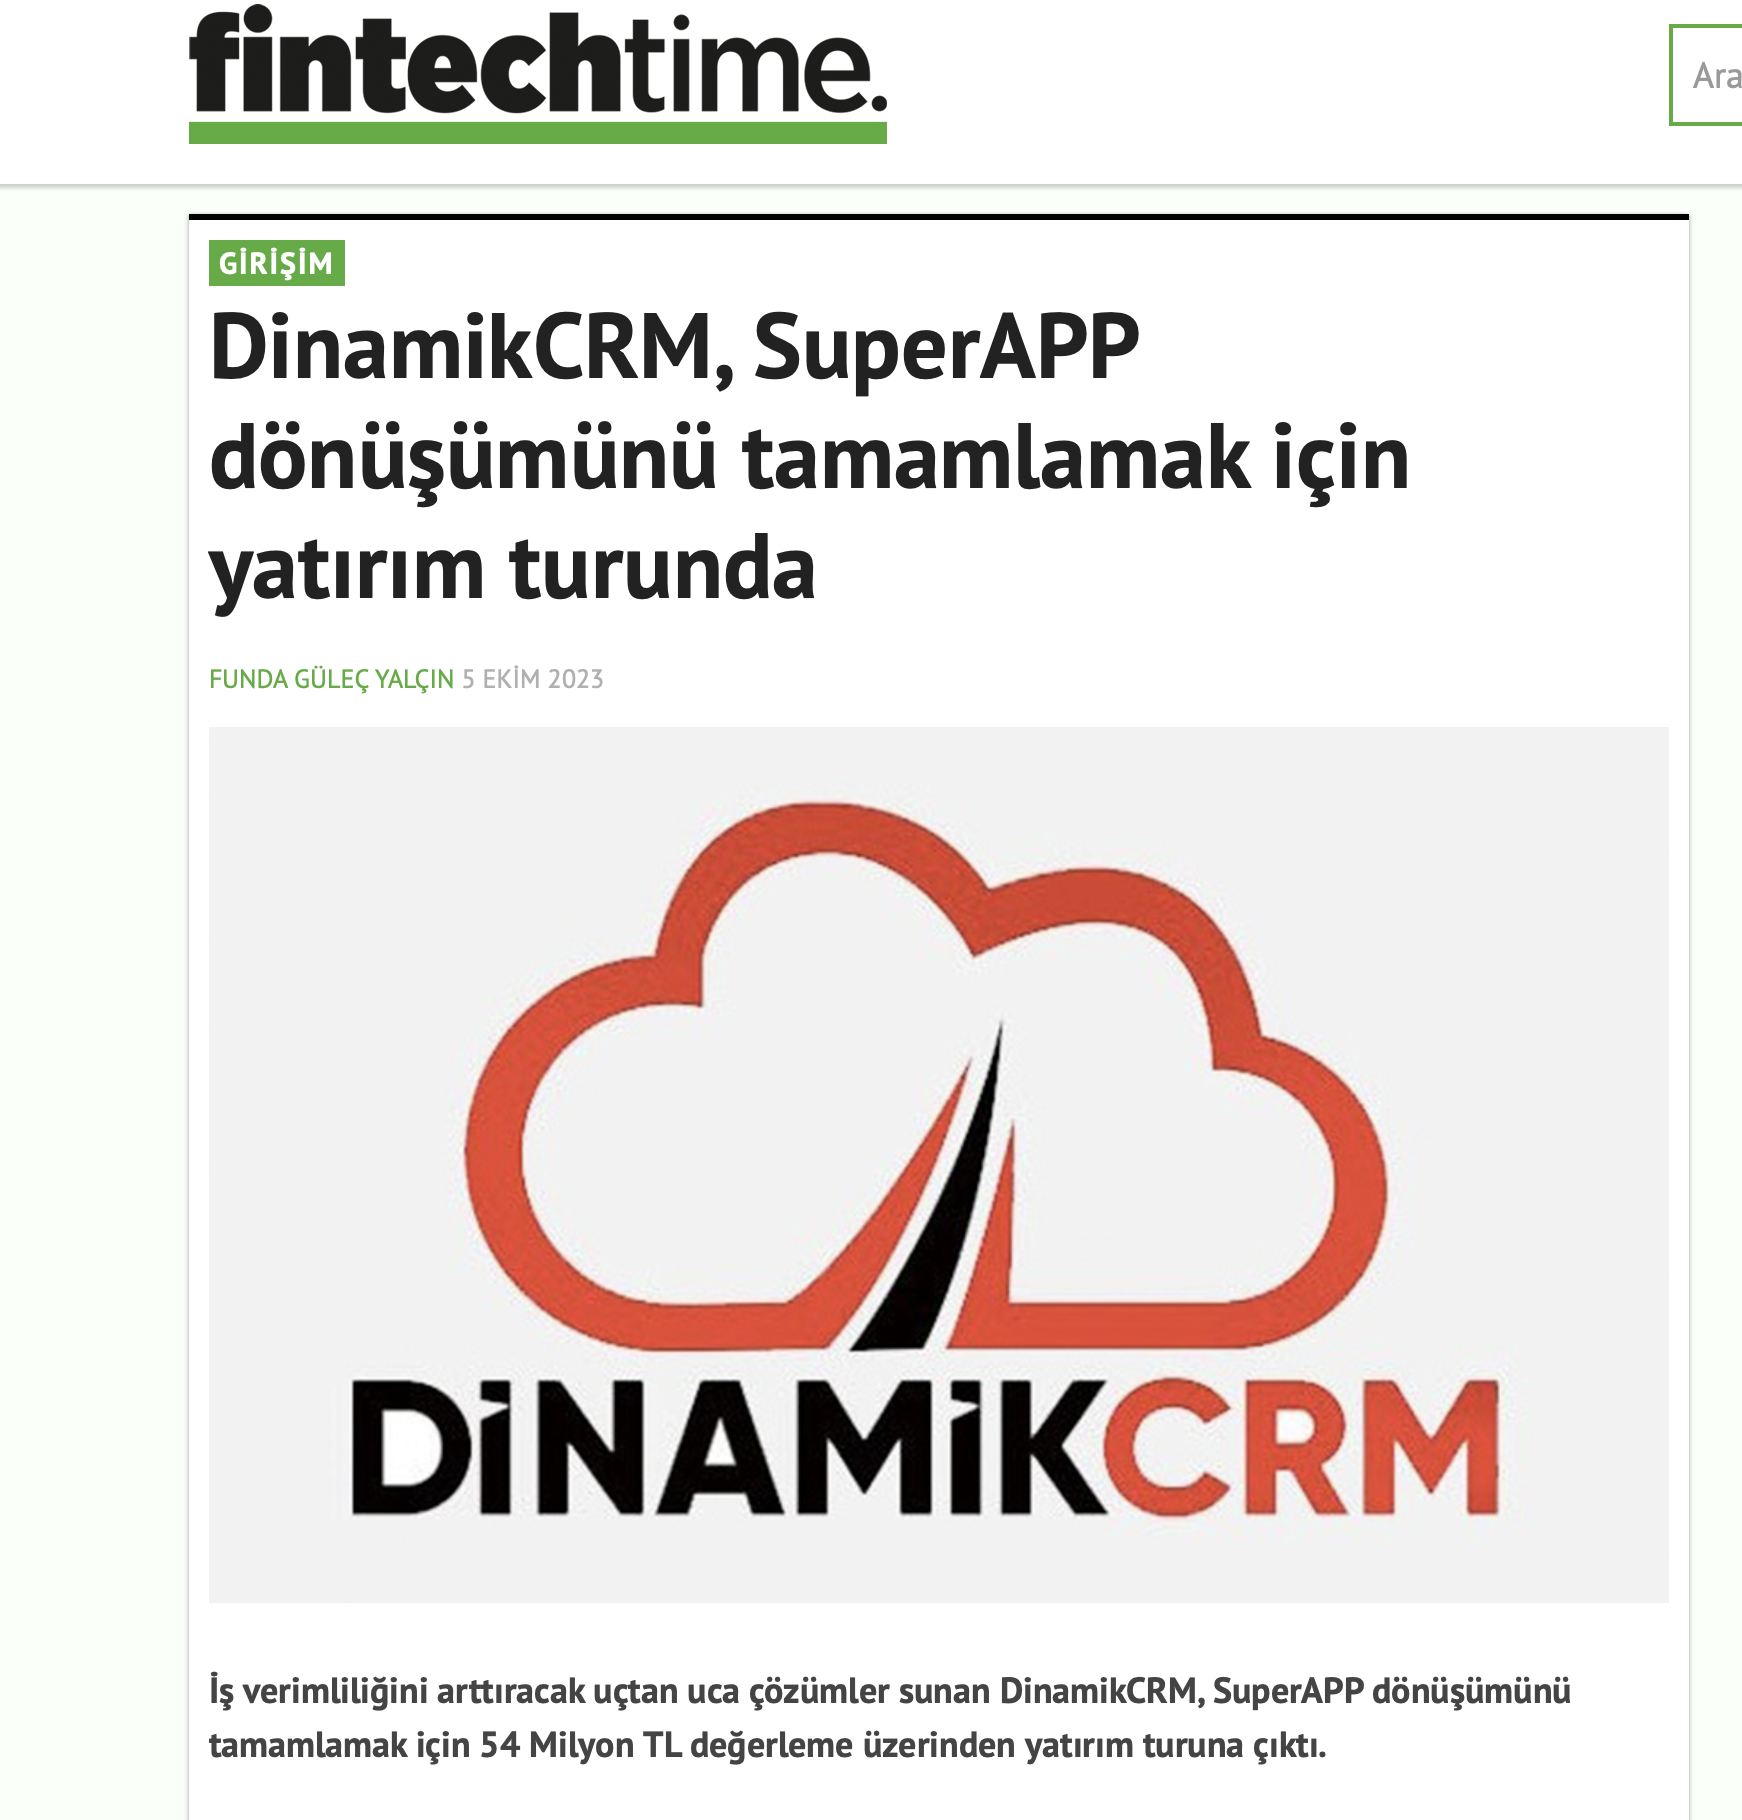 DinamikCRM, SuperAPP dönüşümünü tamamlamak için yatırım turunda